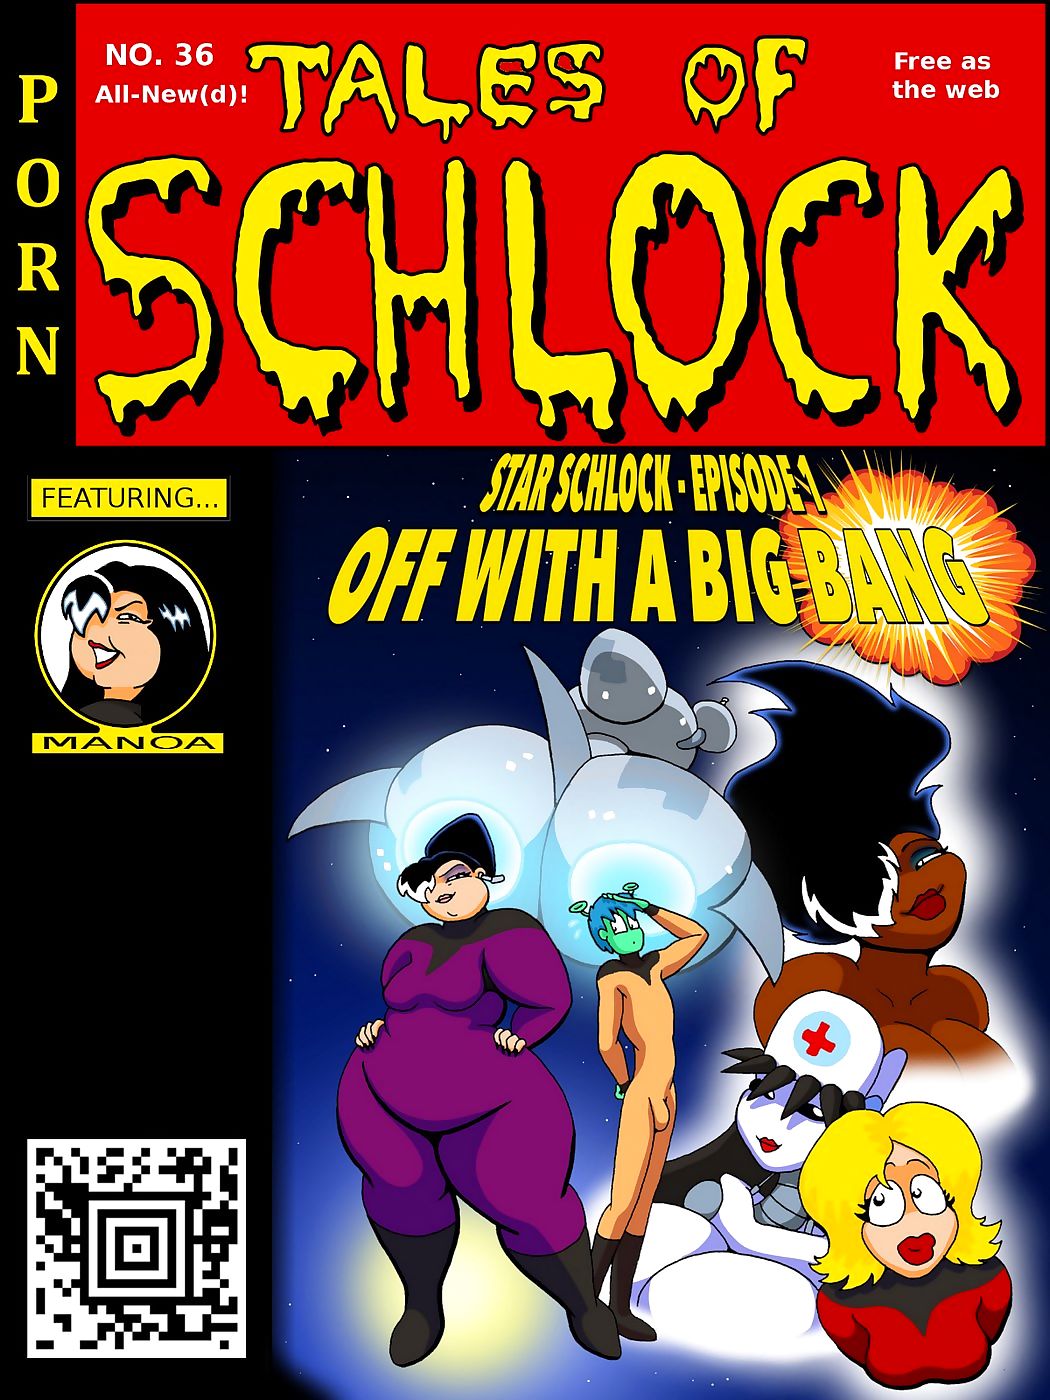 contos de schlock #35 – Estrela schlock page 1